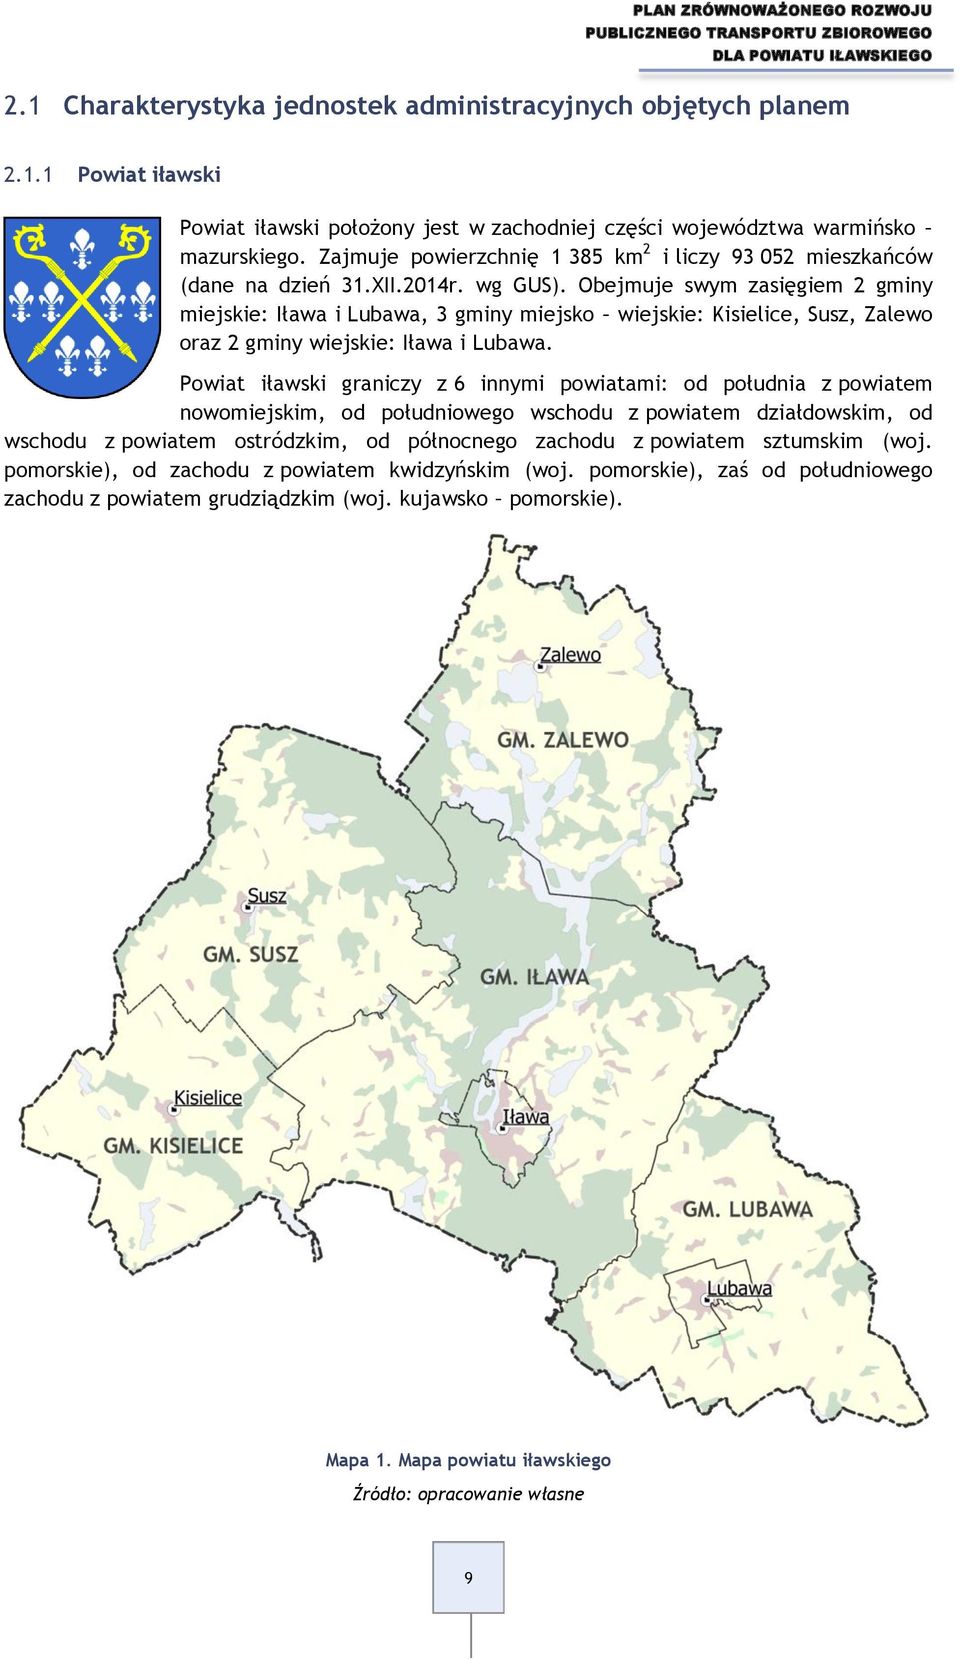 Obejmuje swym zasięgiem 2 gminy miejskie: Iława i Lubawa, 3 gminy miejsko wiejskie: Kisielice, Susz, Zalewo oraz 2 gminy wiejskie: Iława i Lubawa.